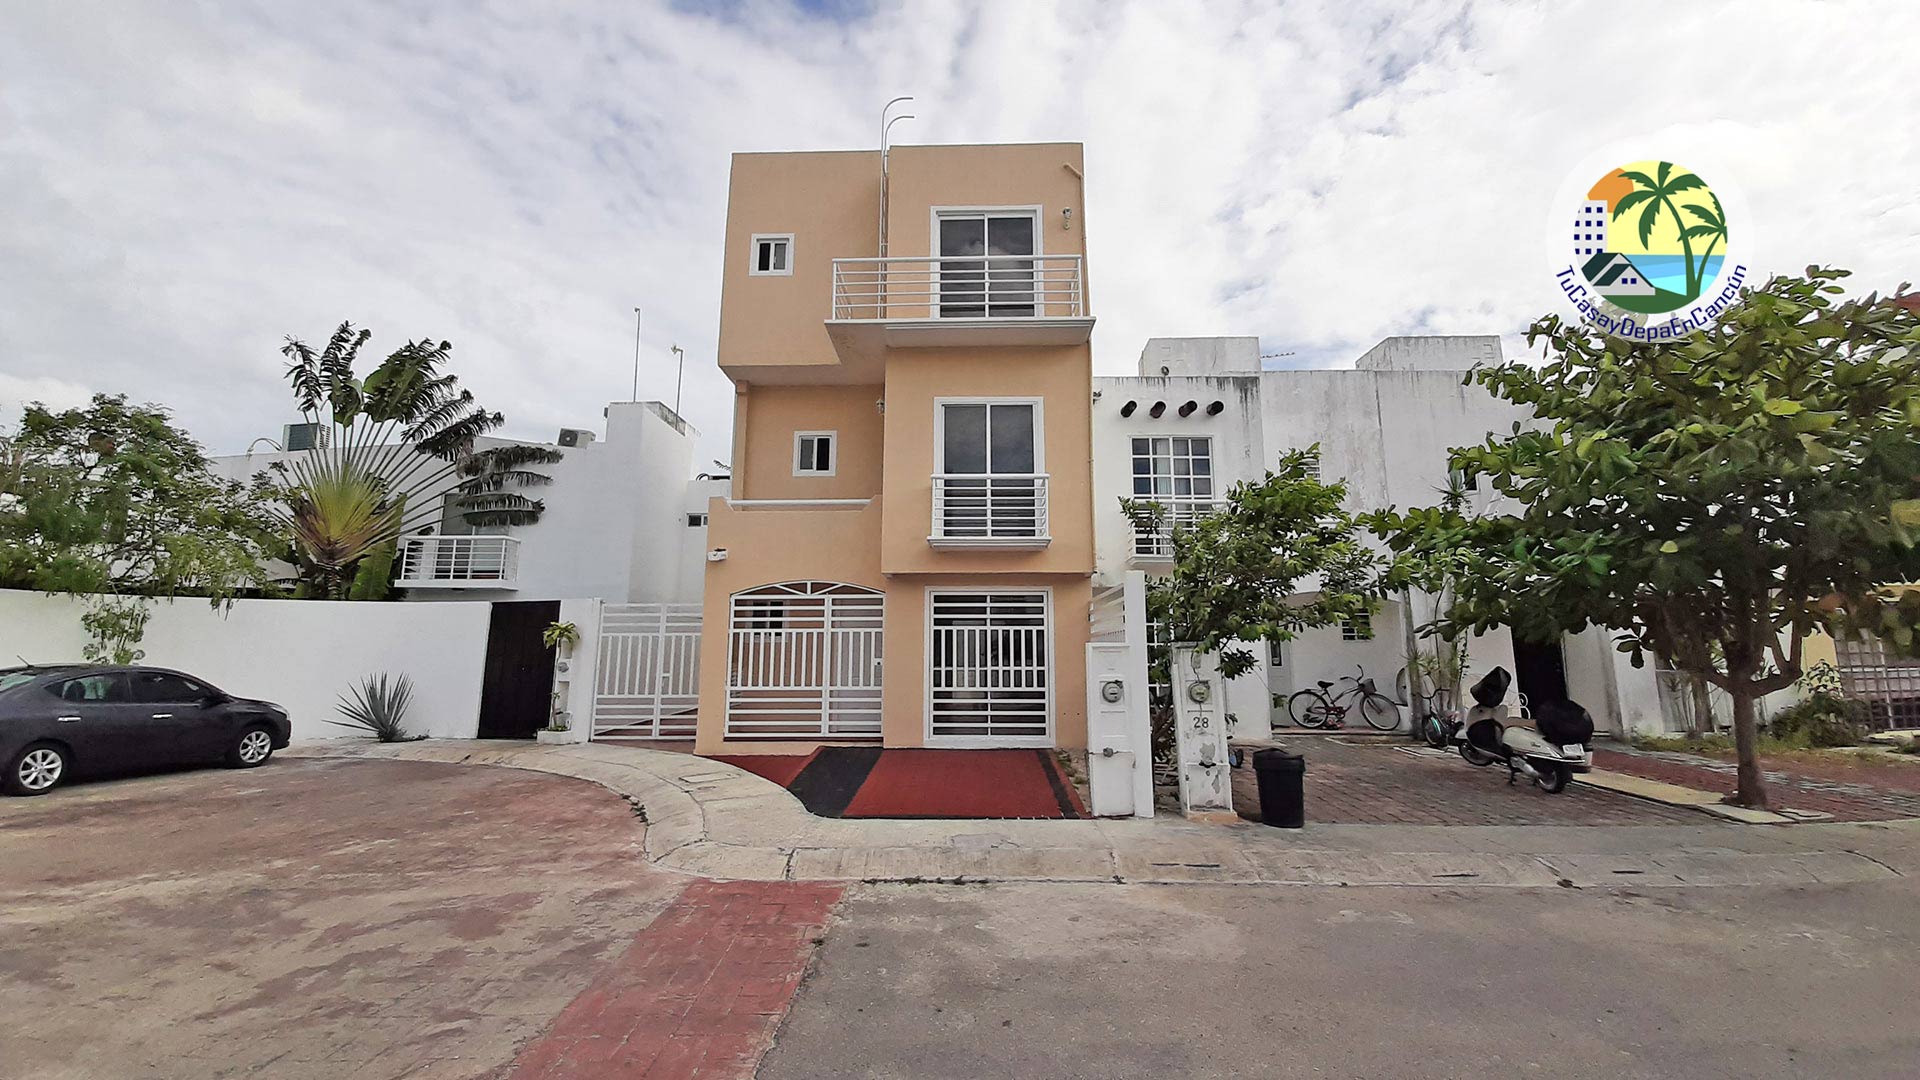 Venta de Casa en Cancún, 3 Recámaras + Estudio, en Polígono Sur - Venta de  Casas, Departamentos y Terrenos en Cancun, Playa del Carmen, Bacalar y más.